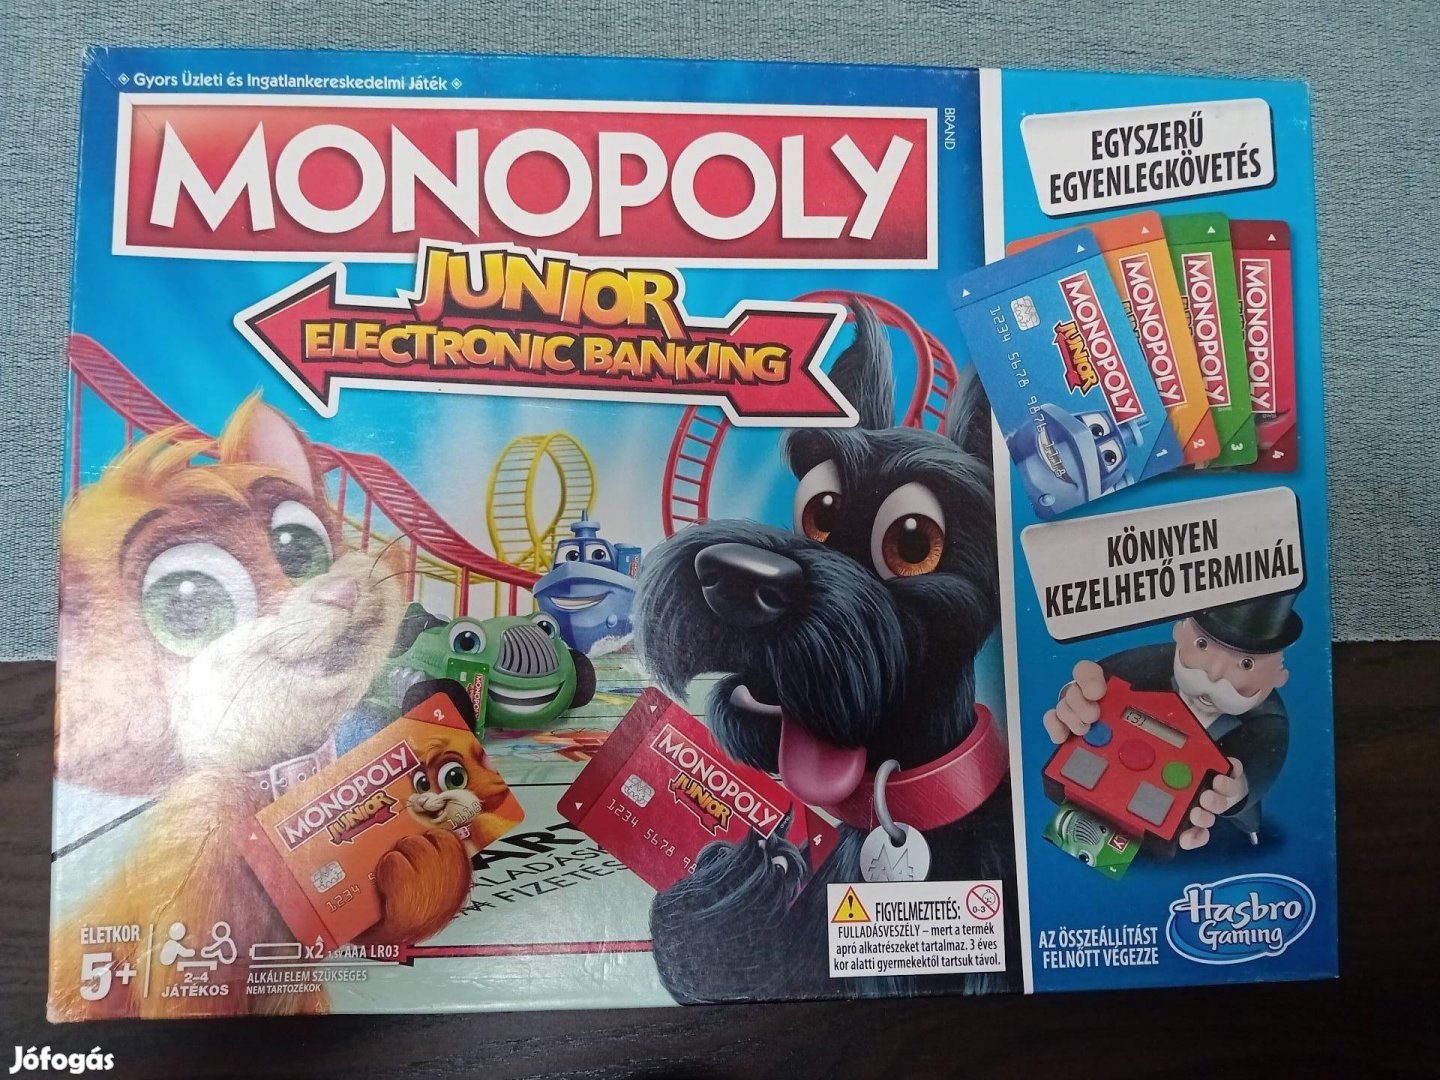 Monopoly junior elektronikus bankolás